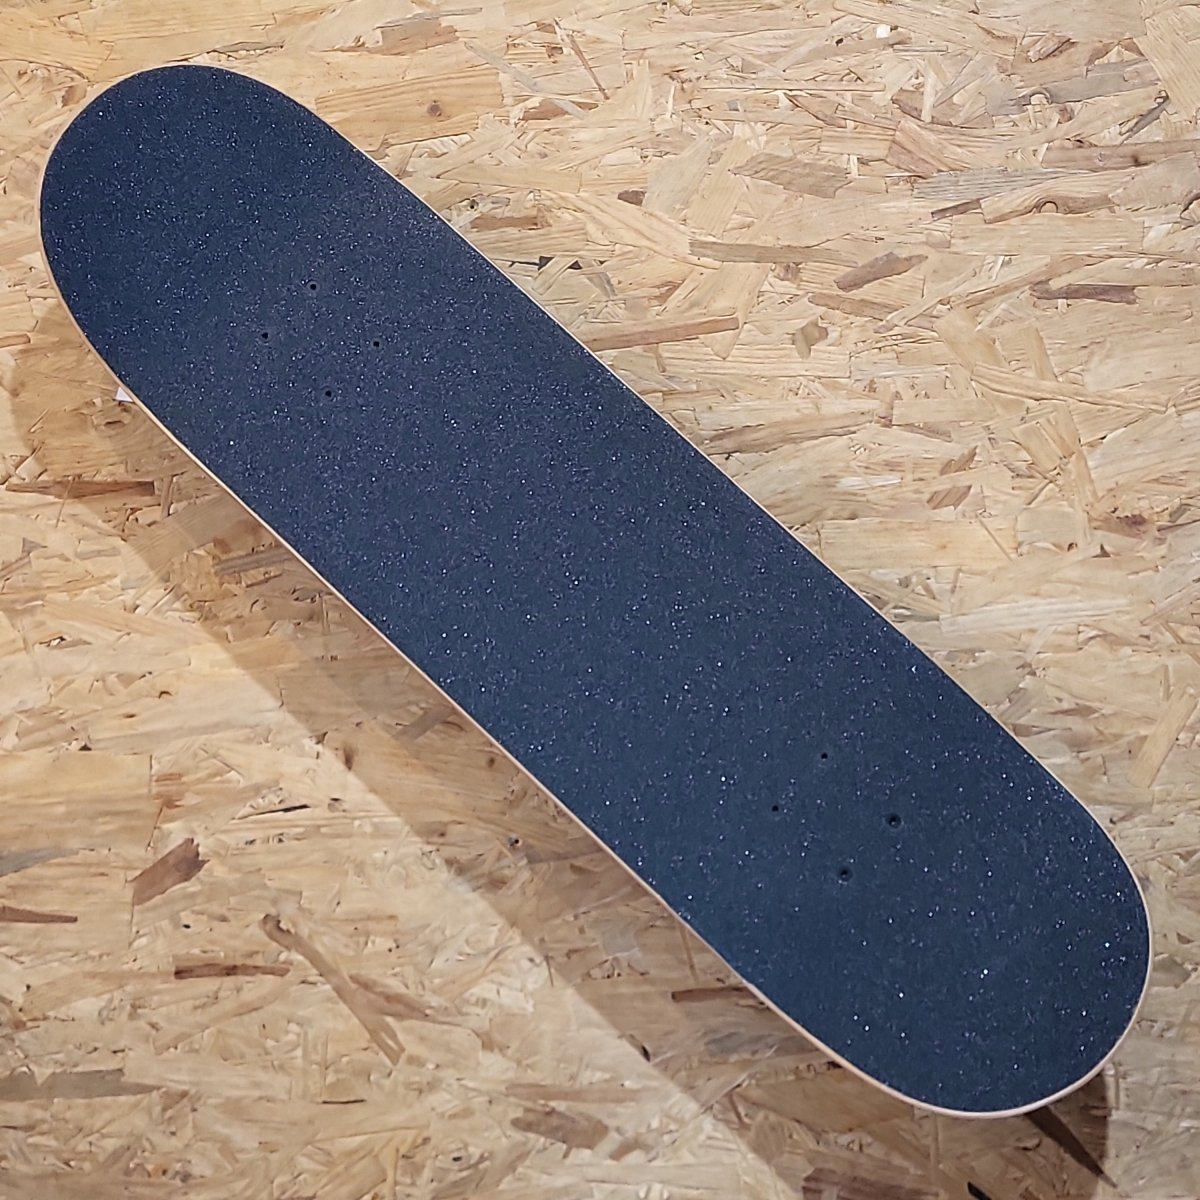 Flip Complete Skateboard 8.25" Wings black - Skateboards - Rollbrett Mission